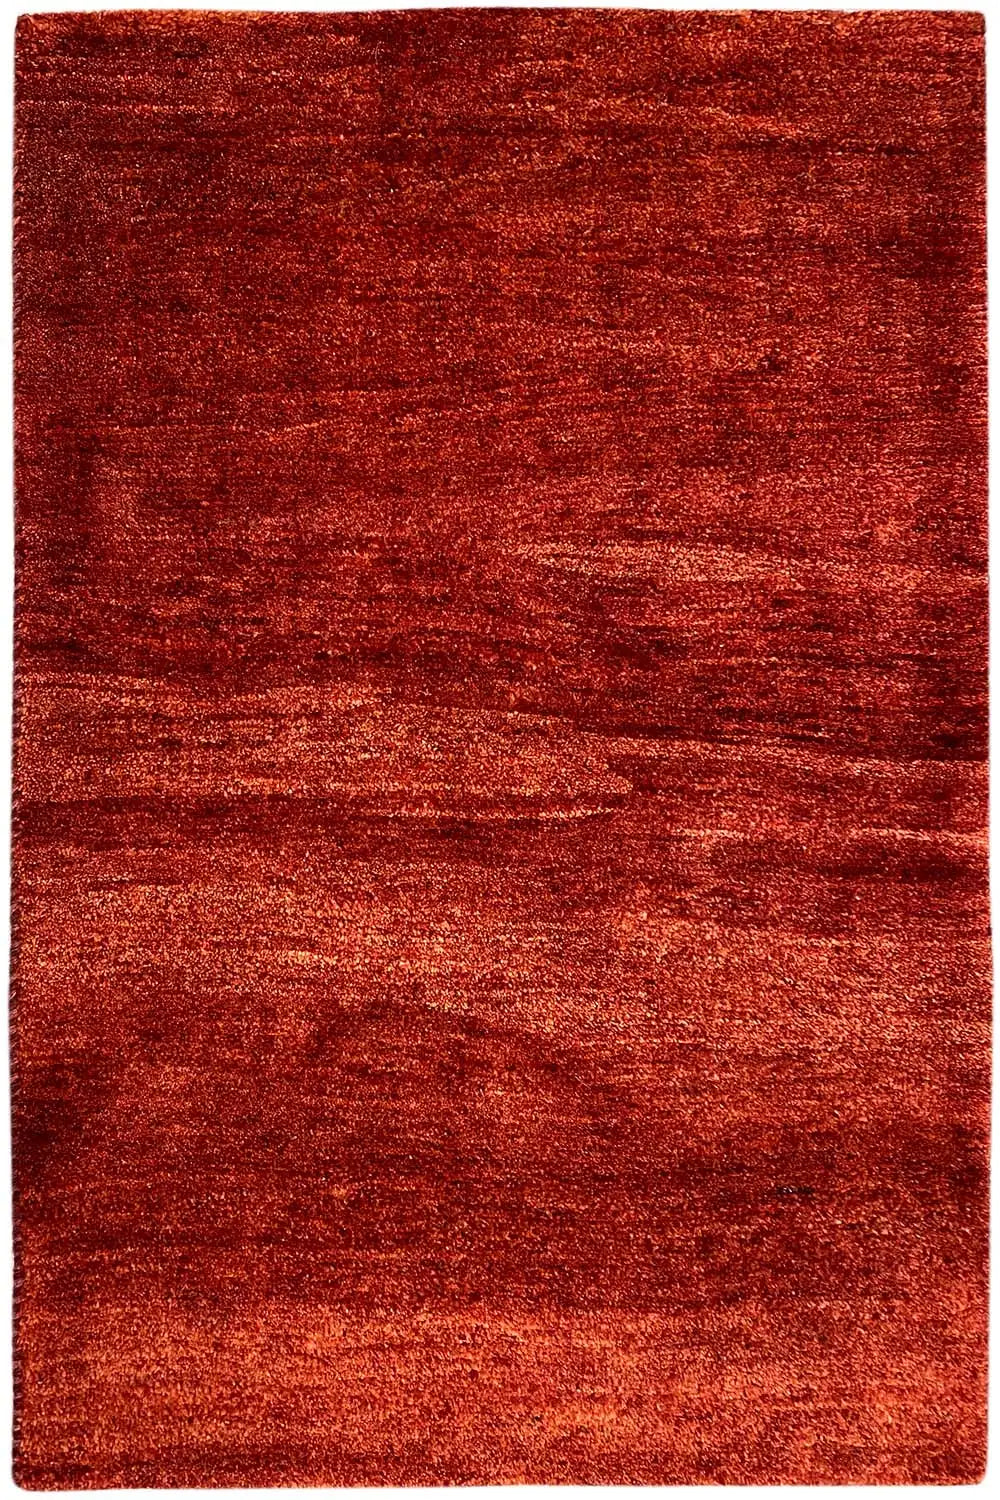 Gabbeh (118x82cm) - German Carpet Shop